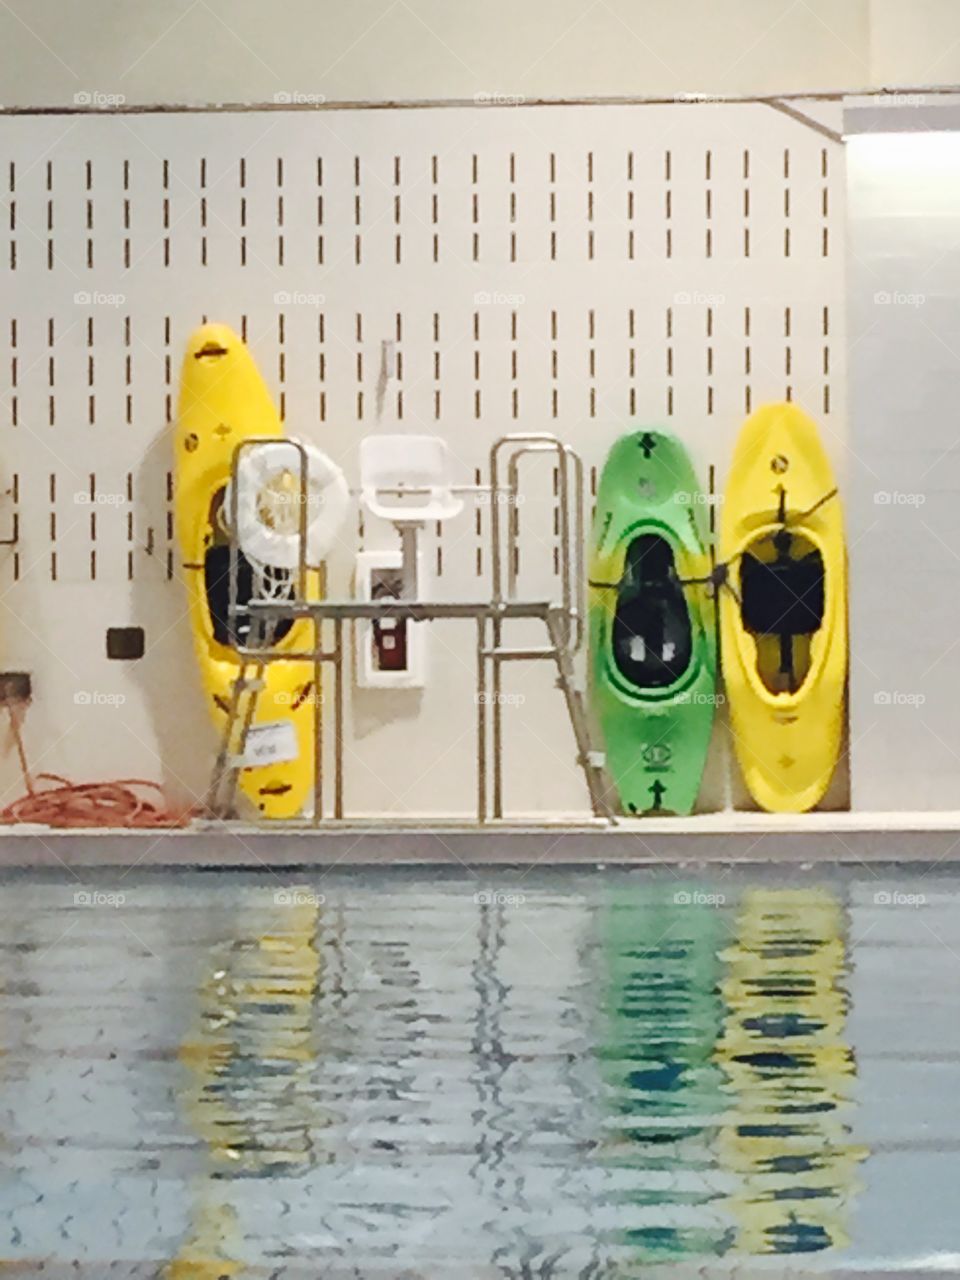 Kayak pool water building indoors